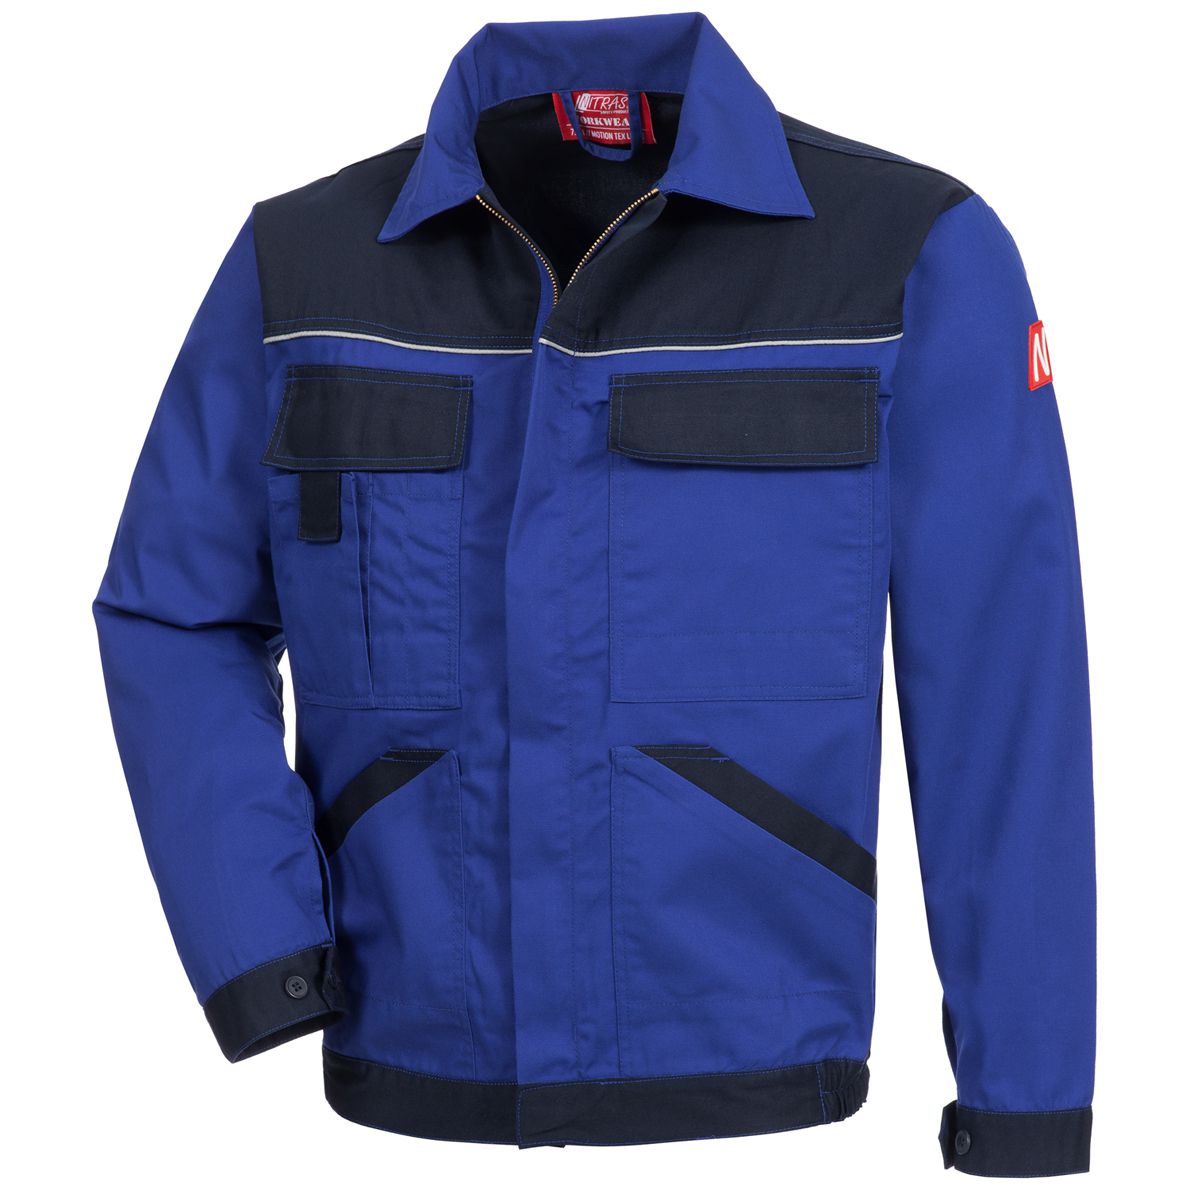 NITRAS MOTION TEX LIGHT 7551 Bundjacke - Cargo-Jacke für die Arbeit - 35% Baumwolle - Blau - 64